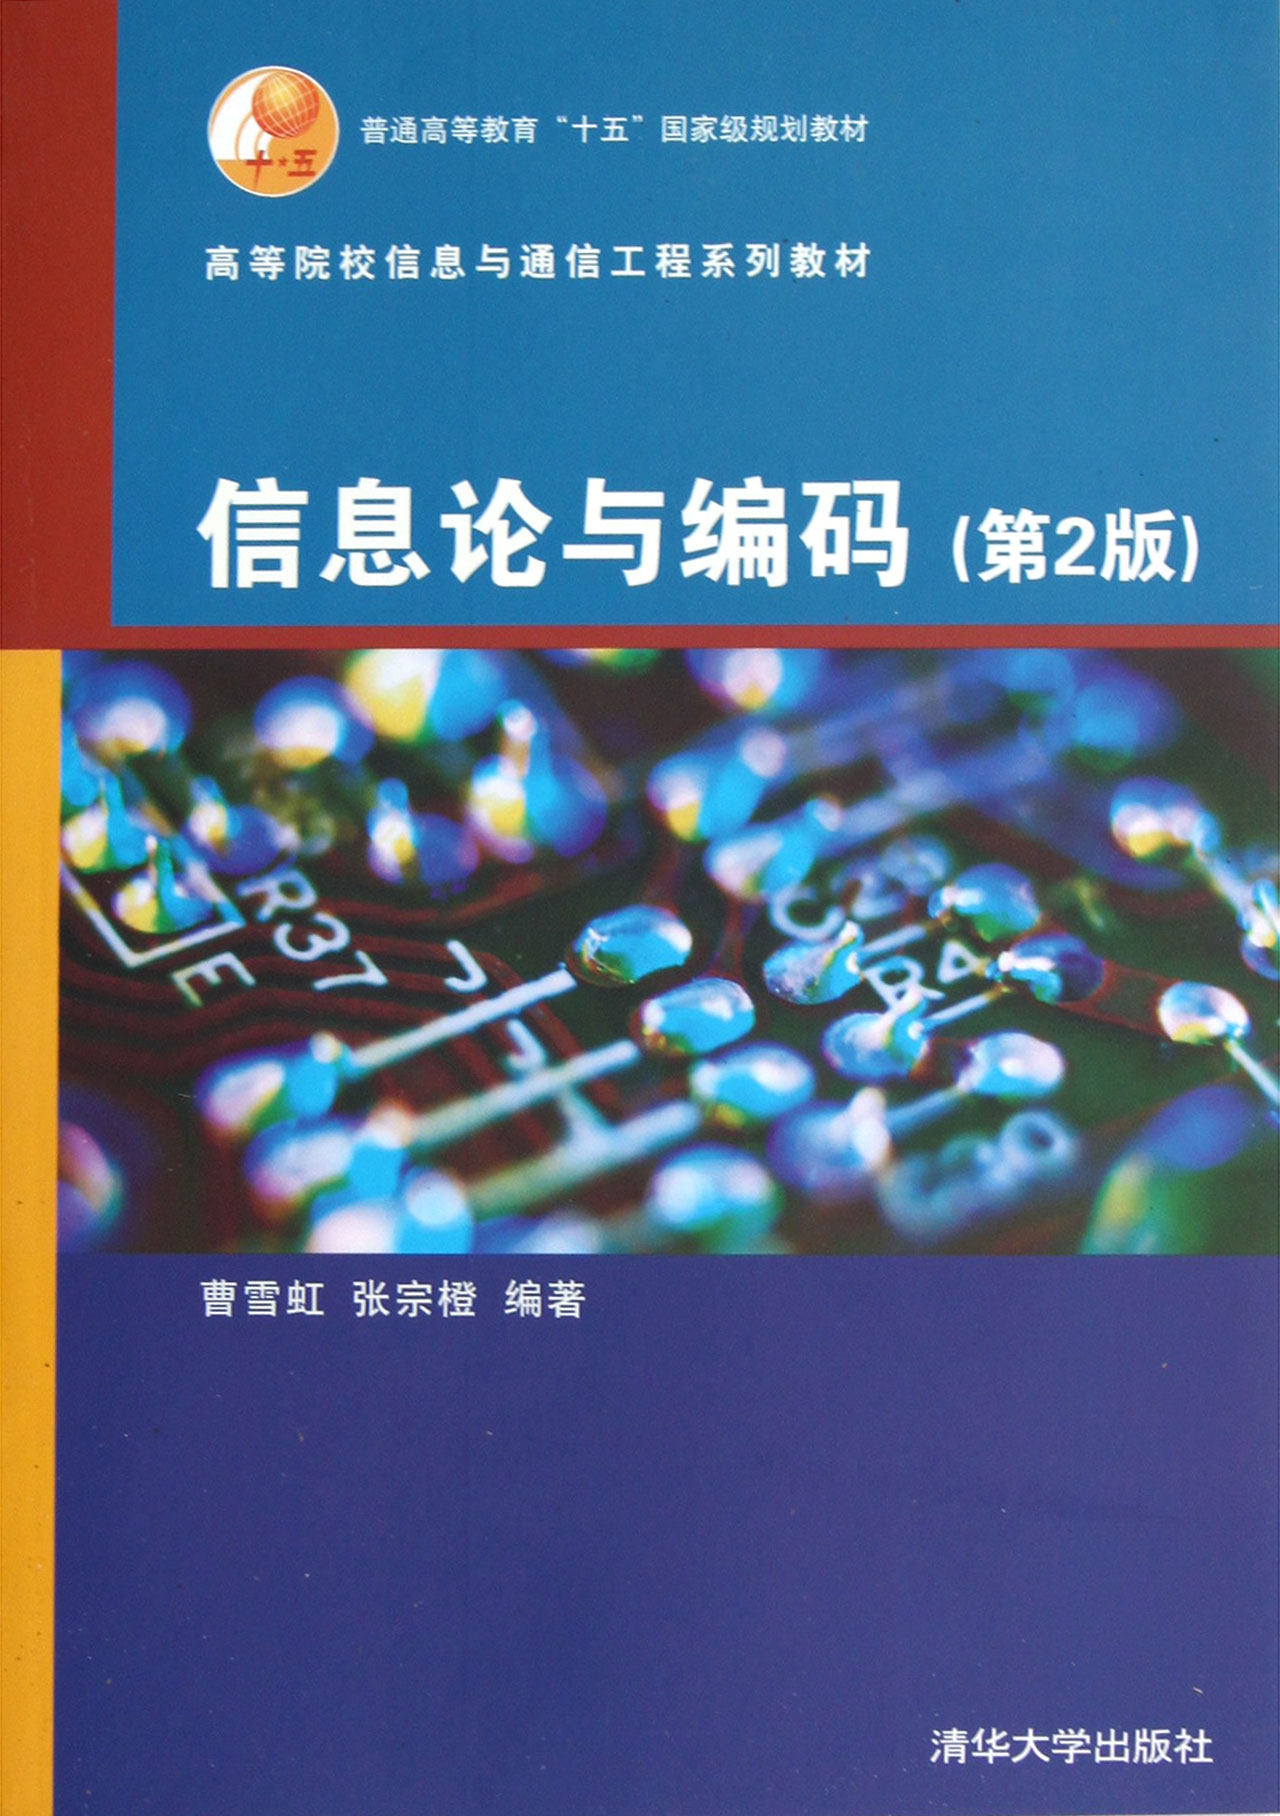 資訊理論與編碼(清華大學出版社出版圖書)